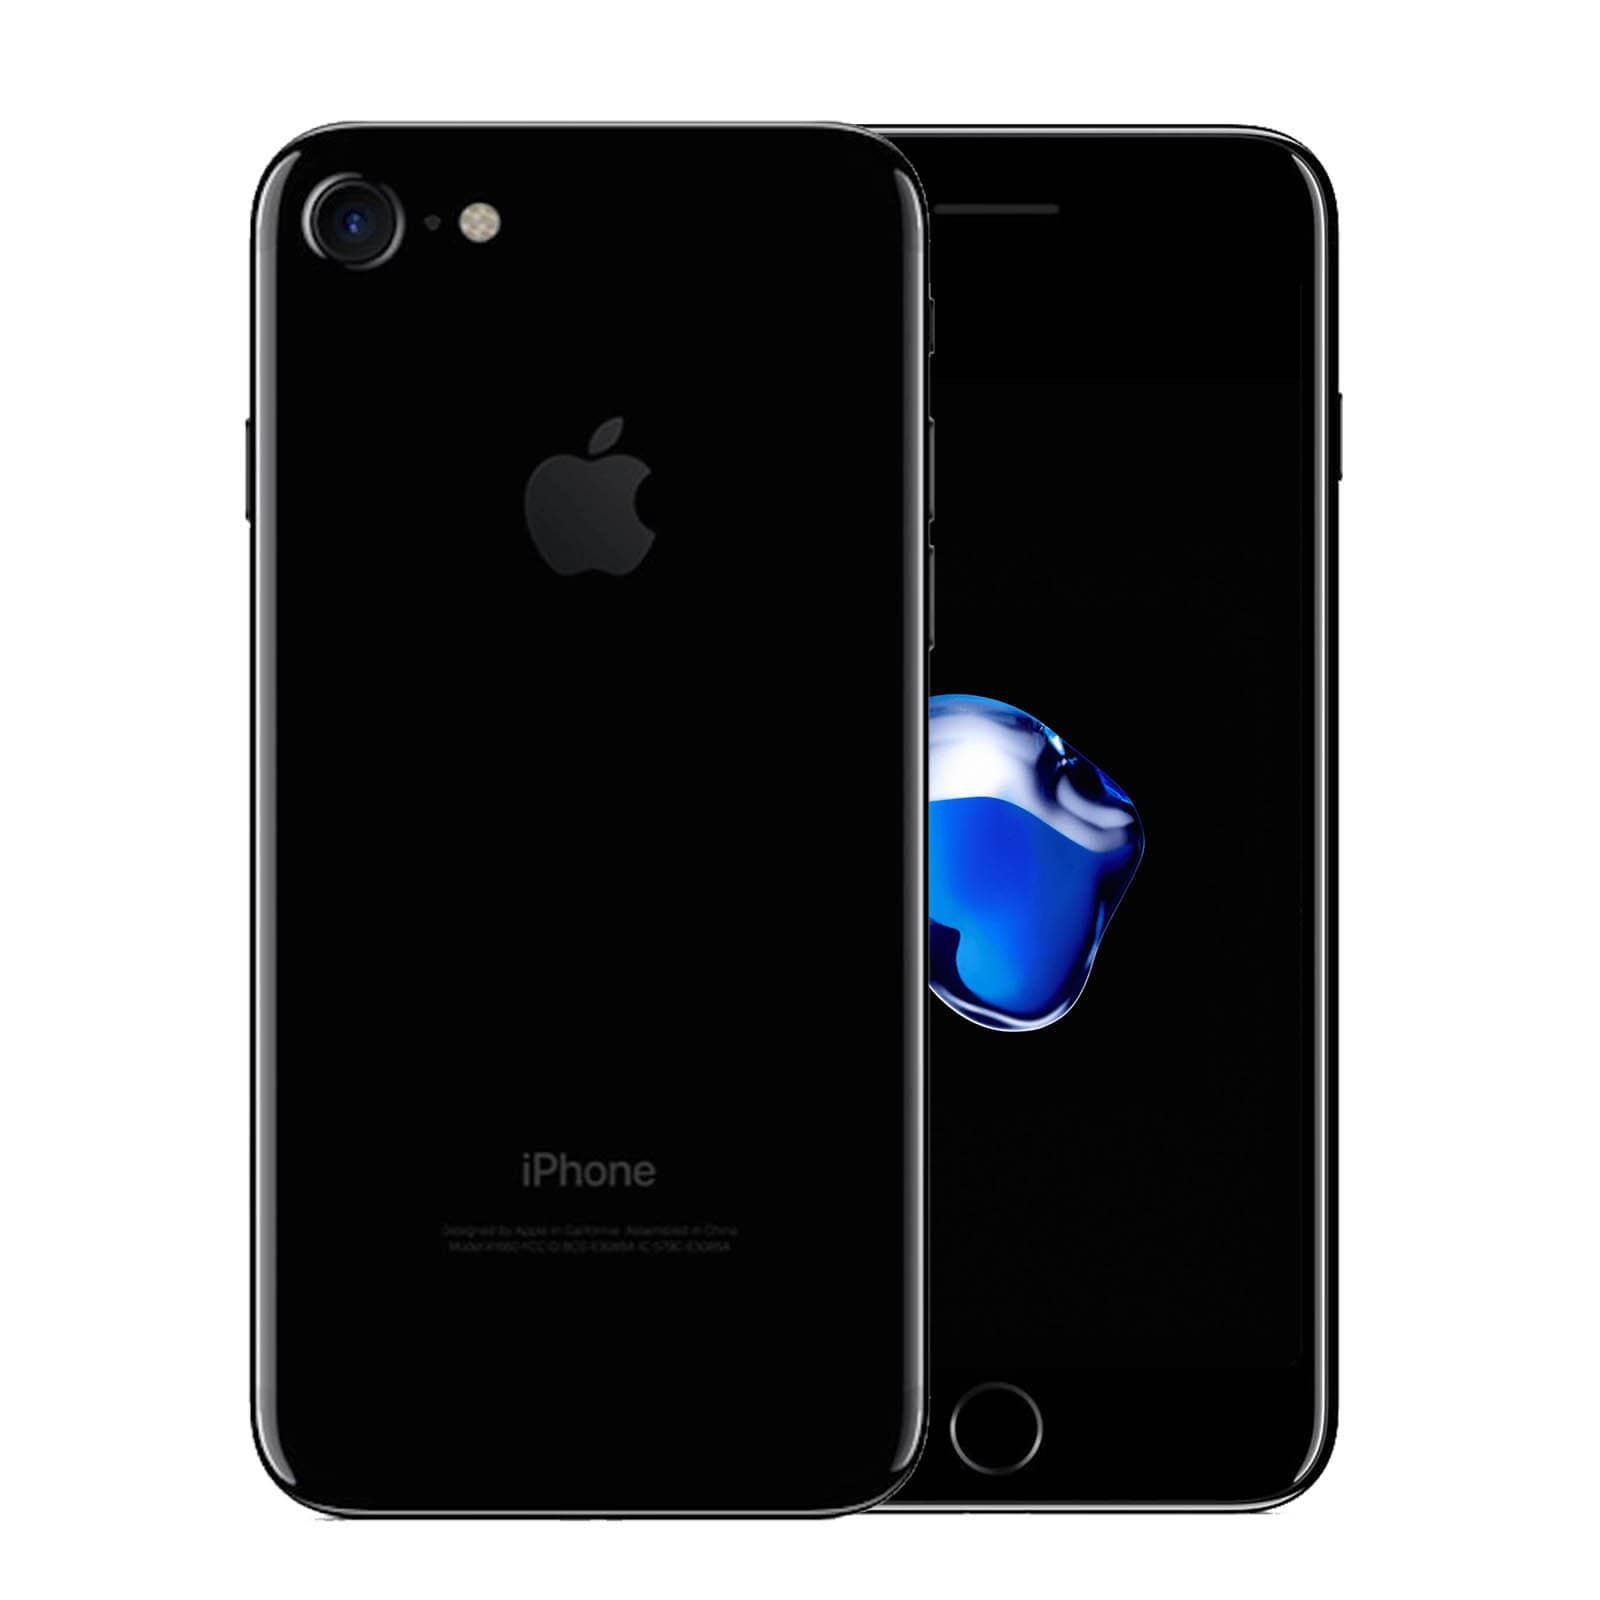 Apple iPhone 7 32GB Jet Black Fair - Unlocked